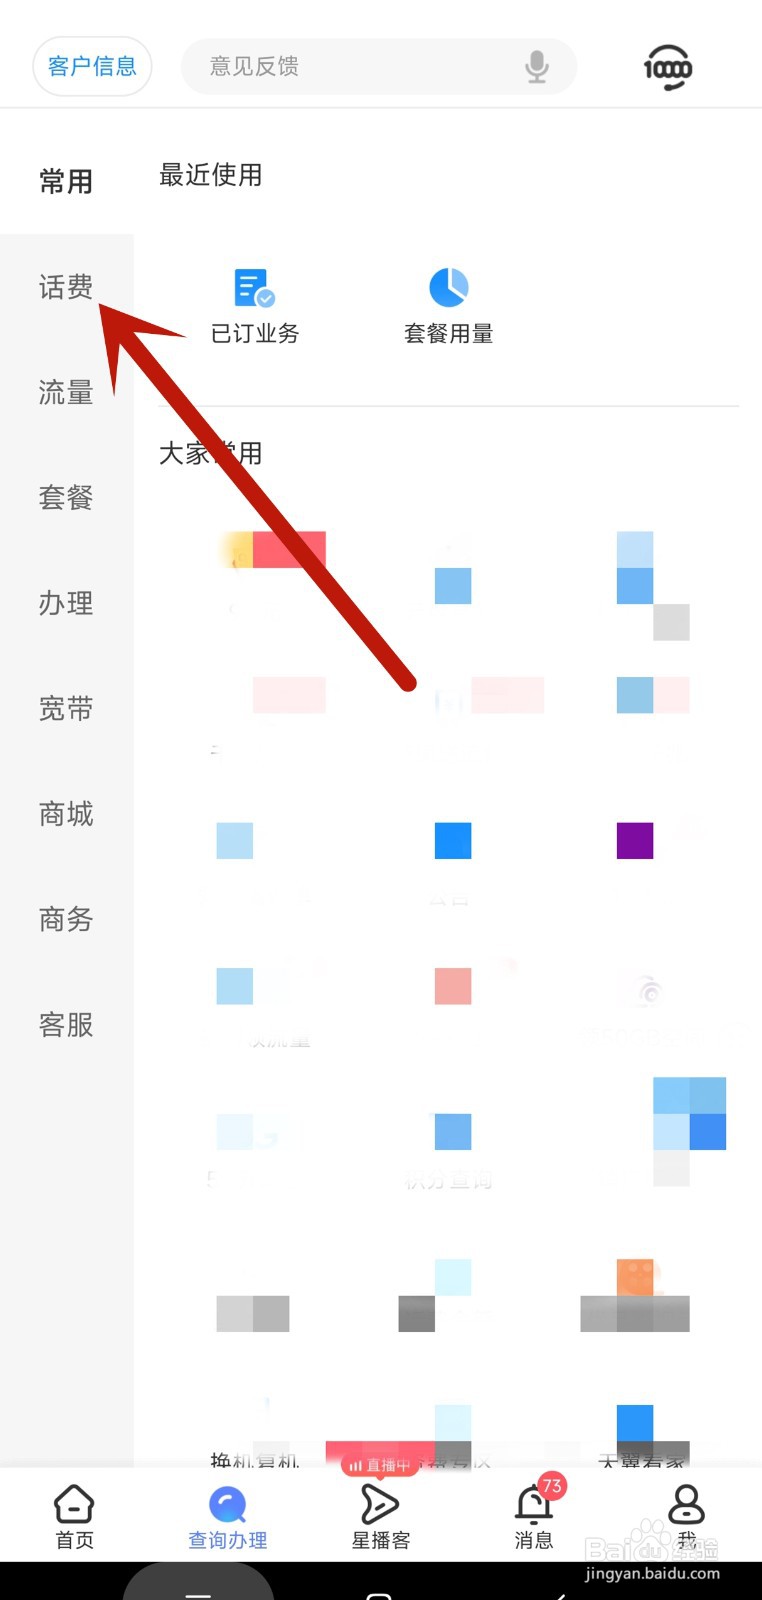 中国电信app发票抬头信息如何设置